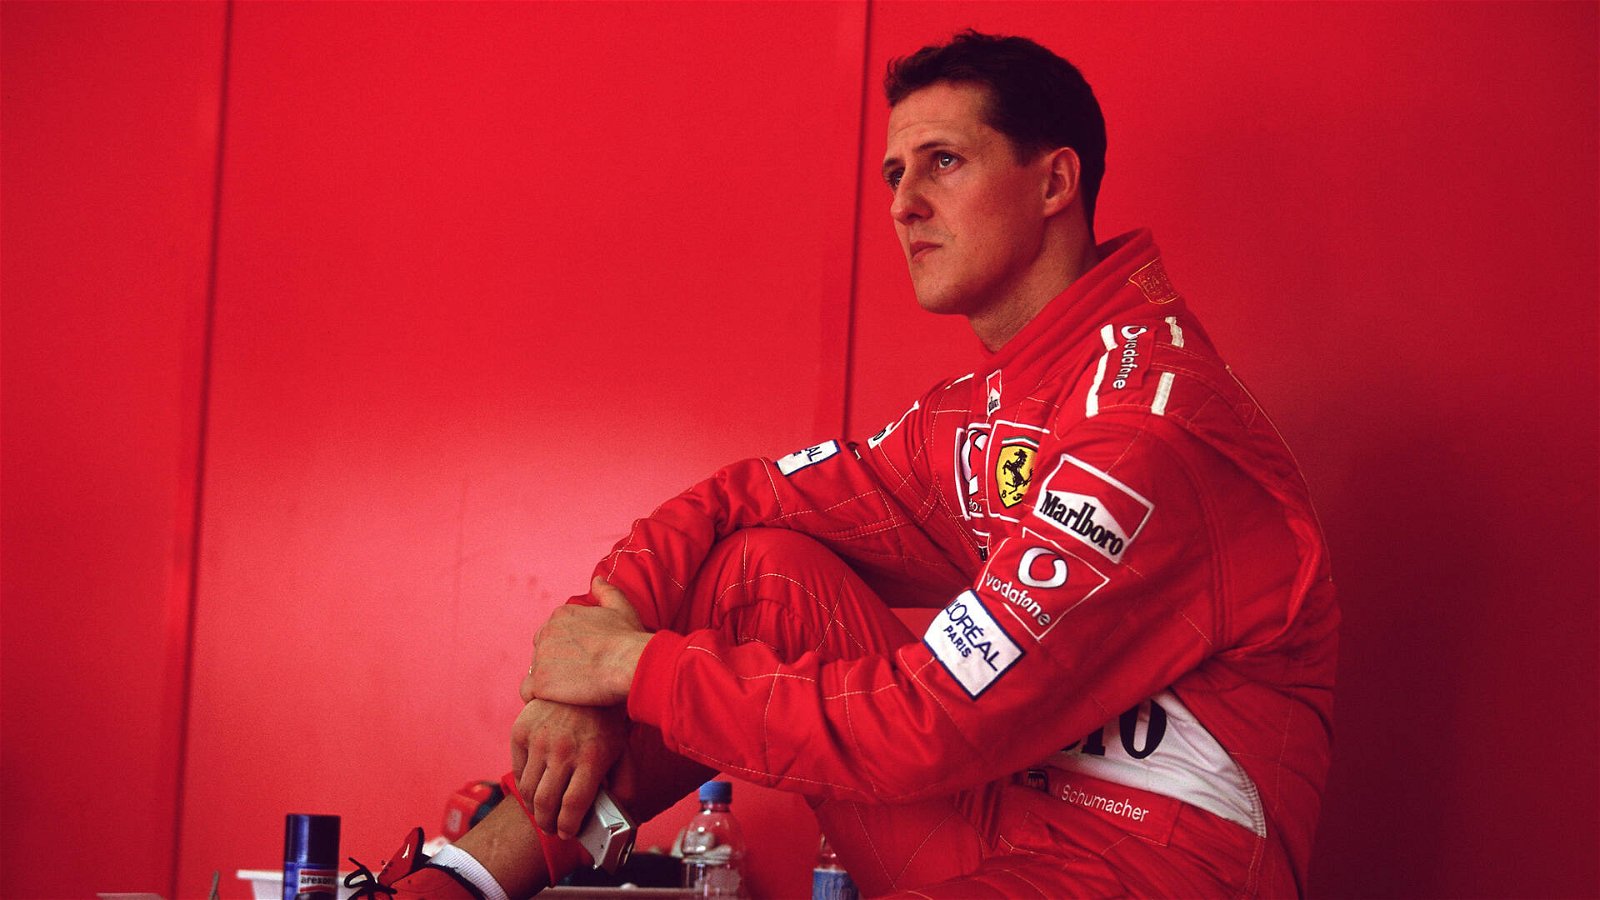 Immagine di Michael Schumacher intervistato in versione AI, scatta la denuncia